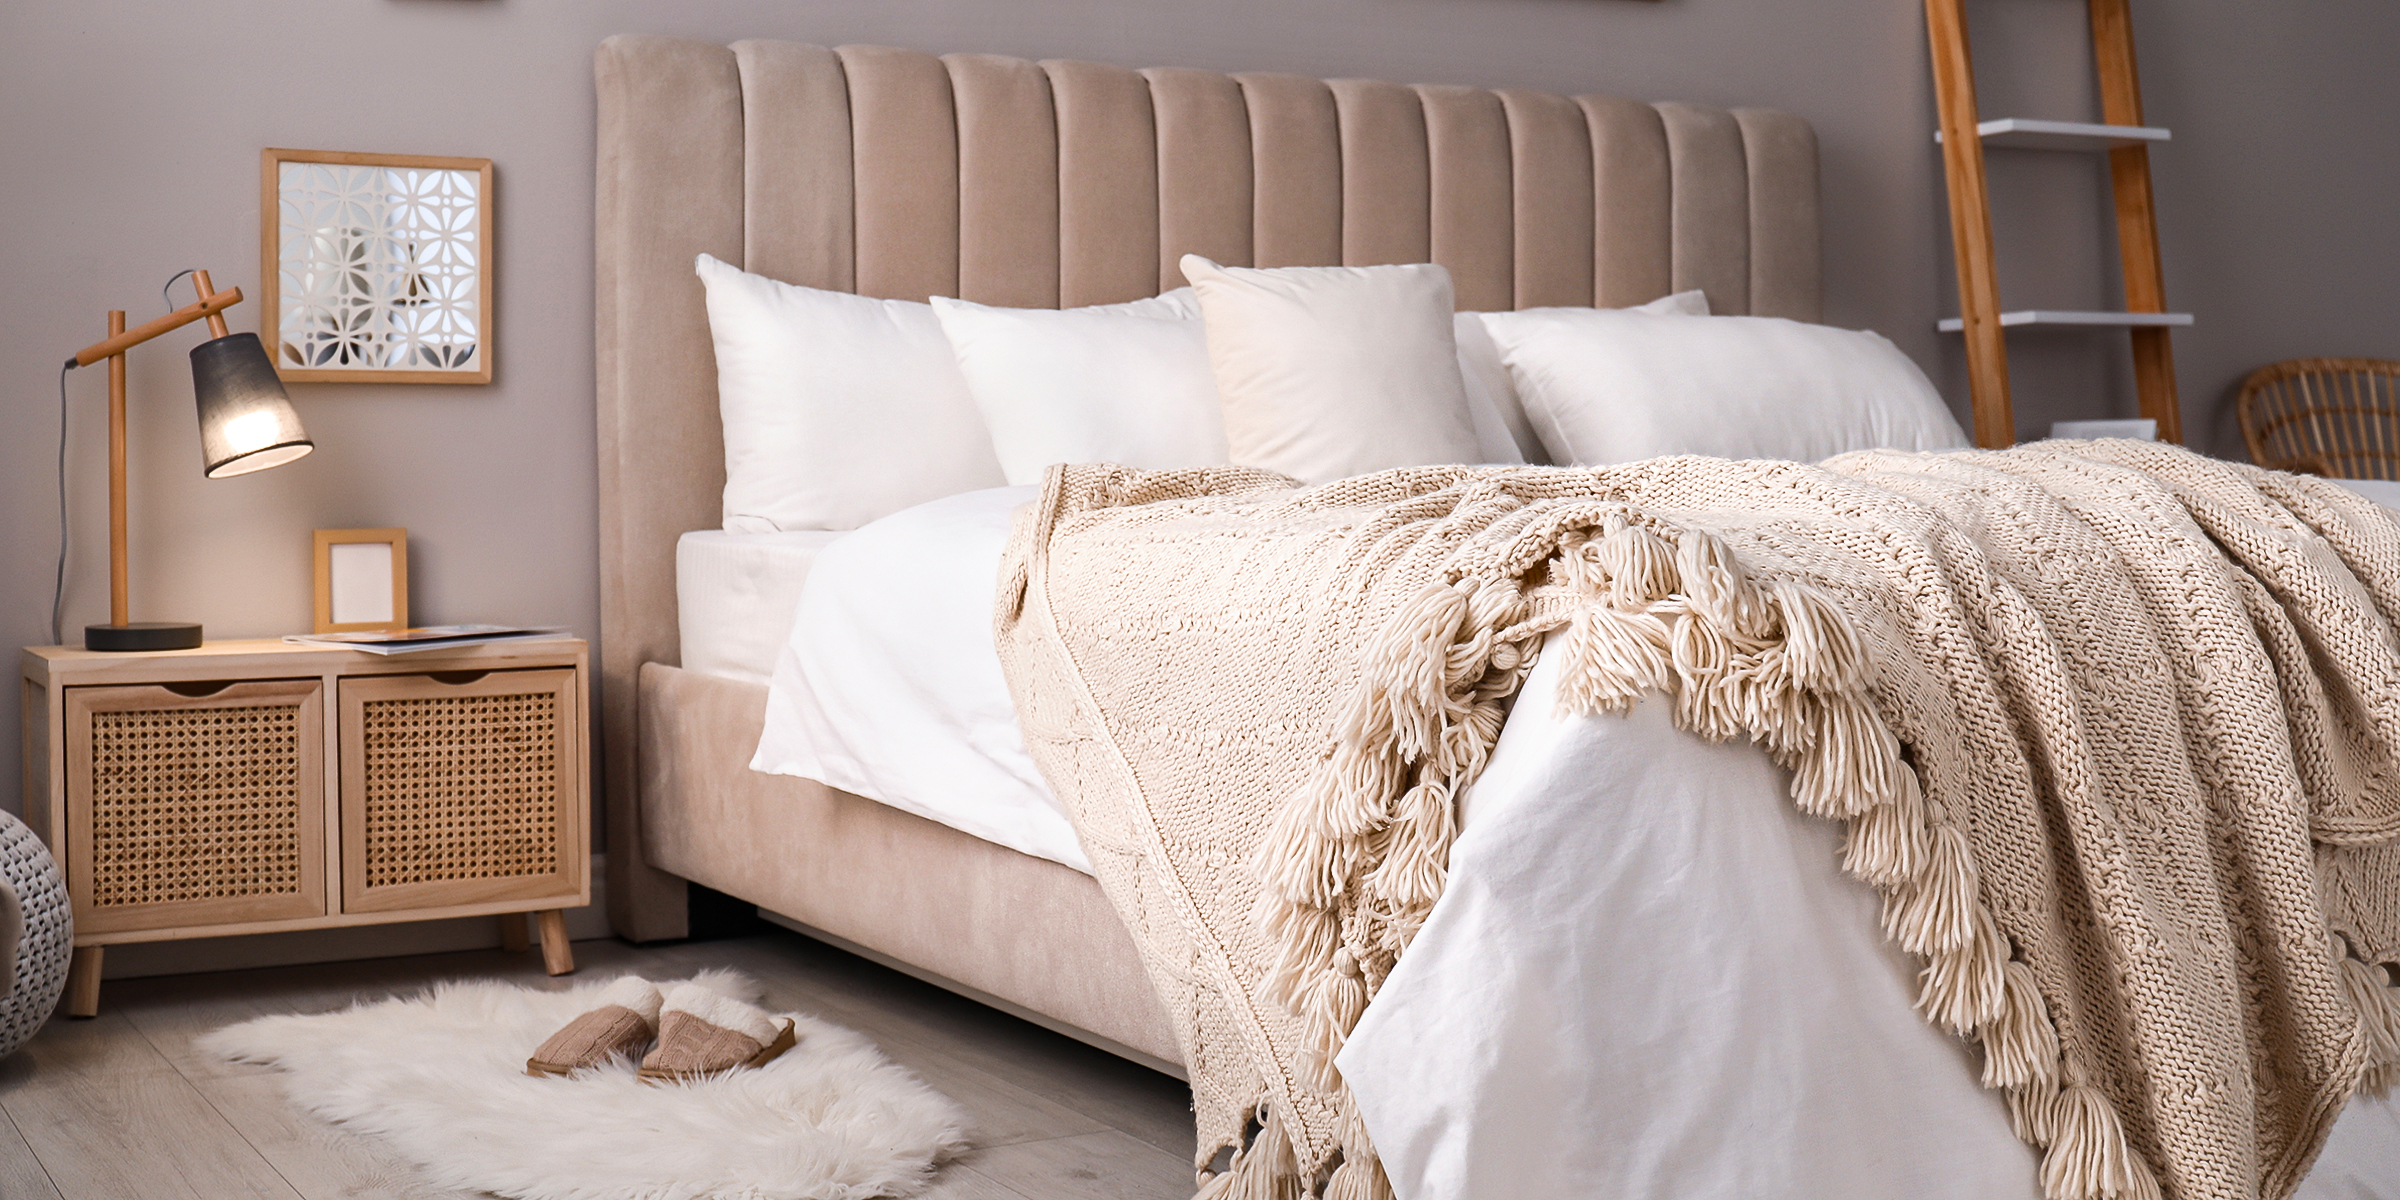 A bedroom | Source: Shutterstock